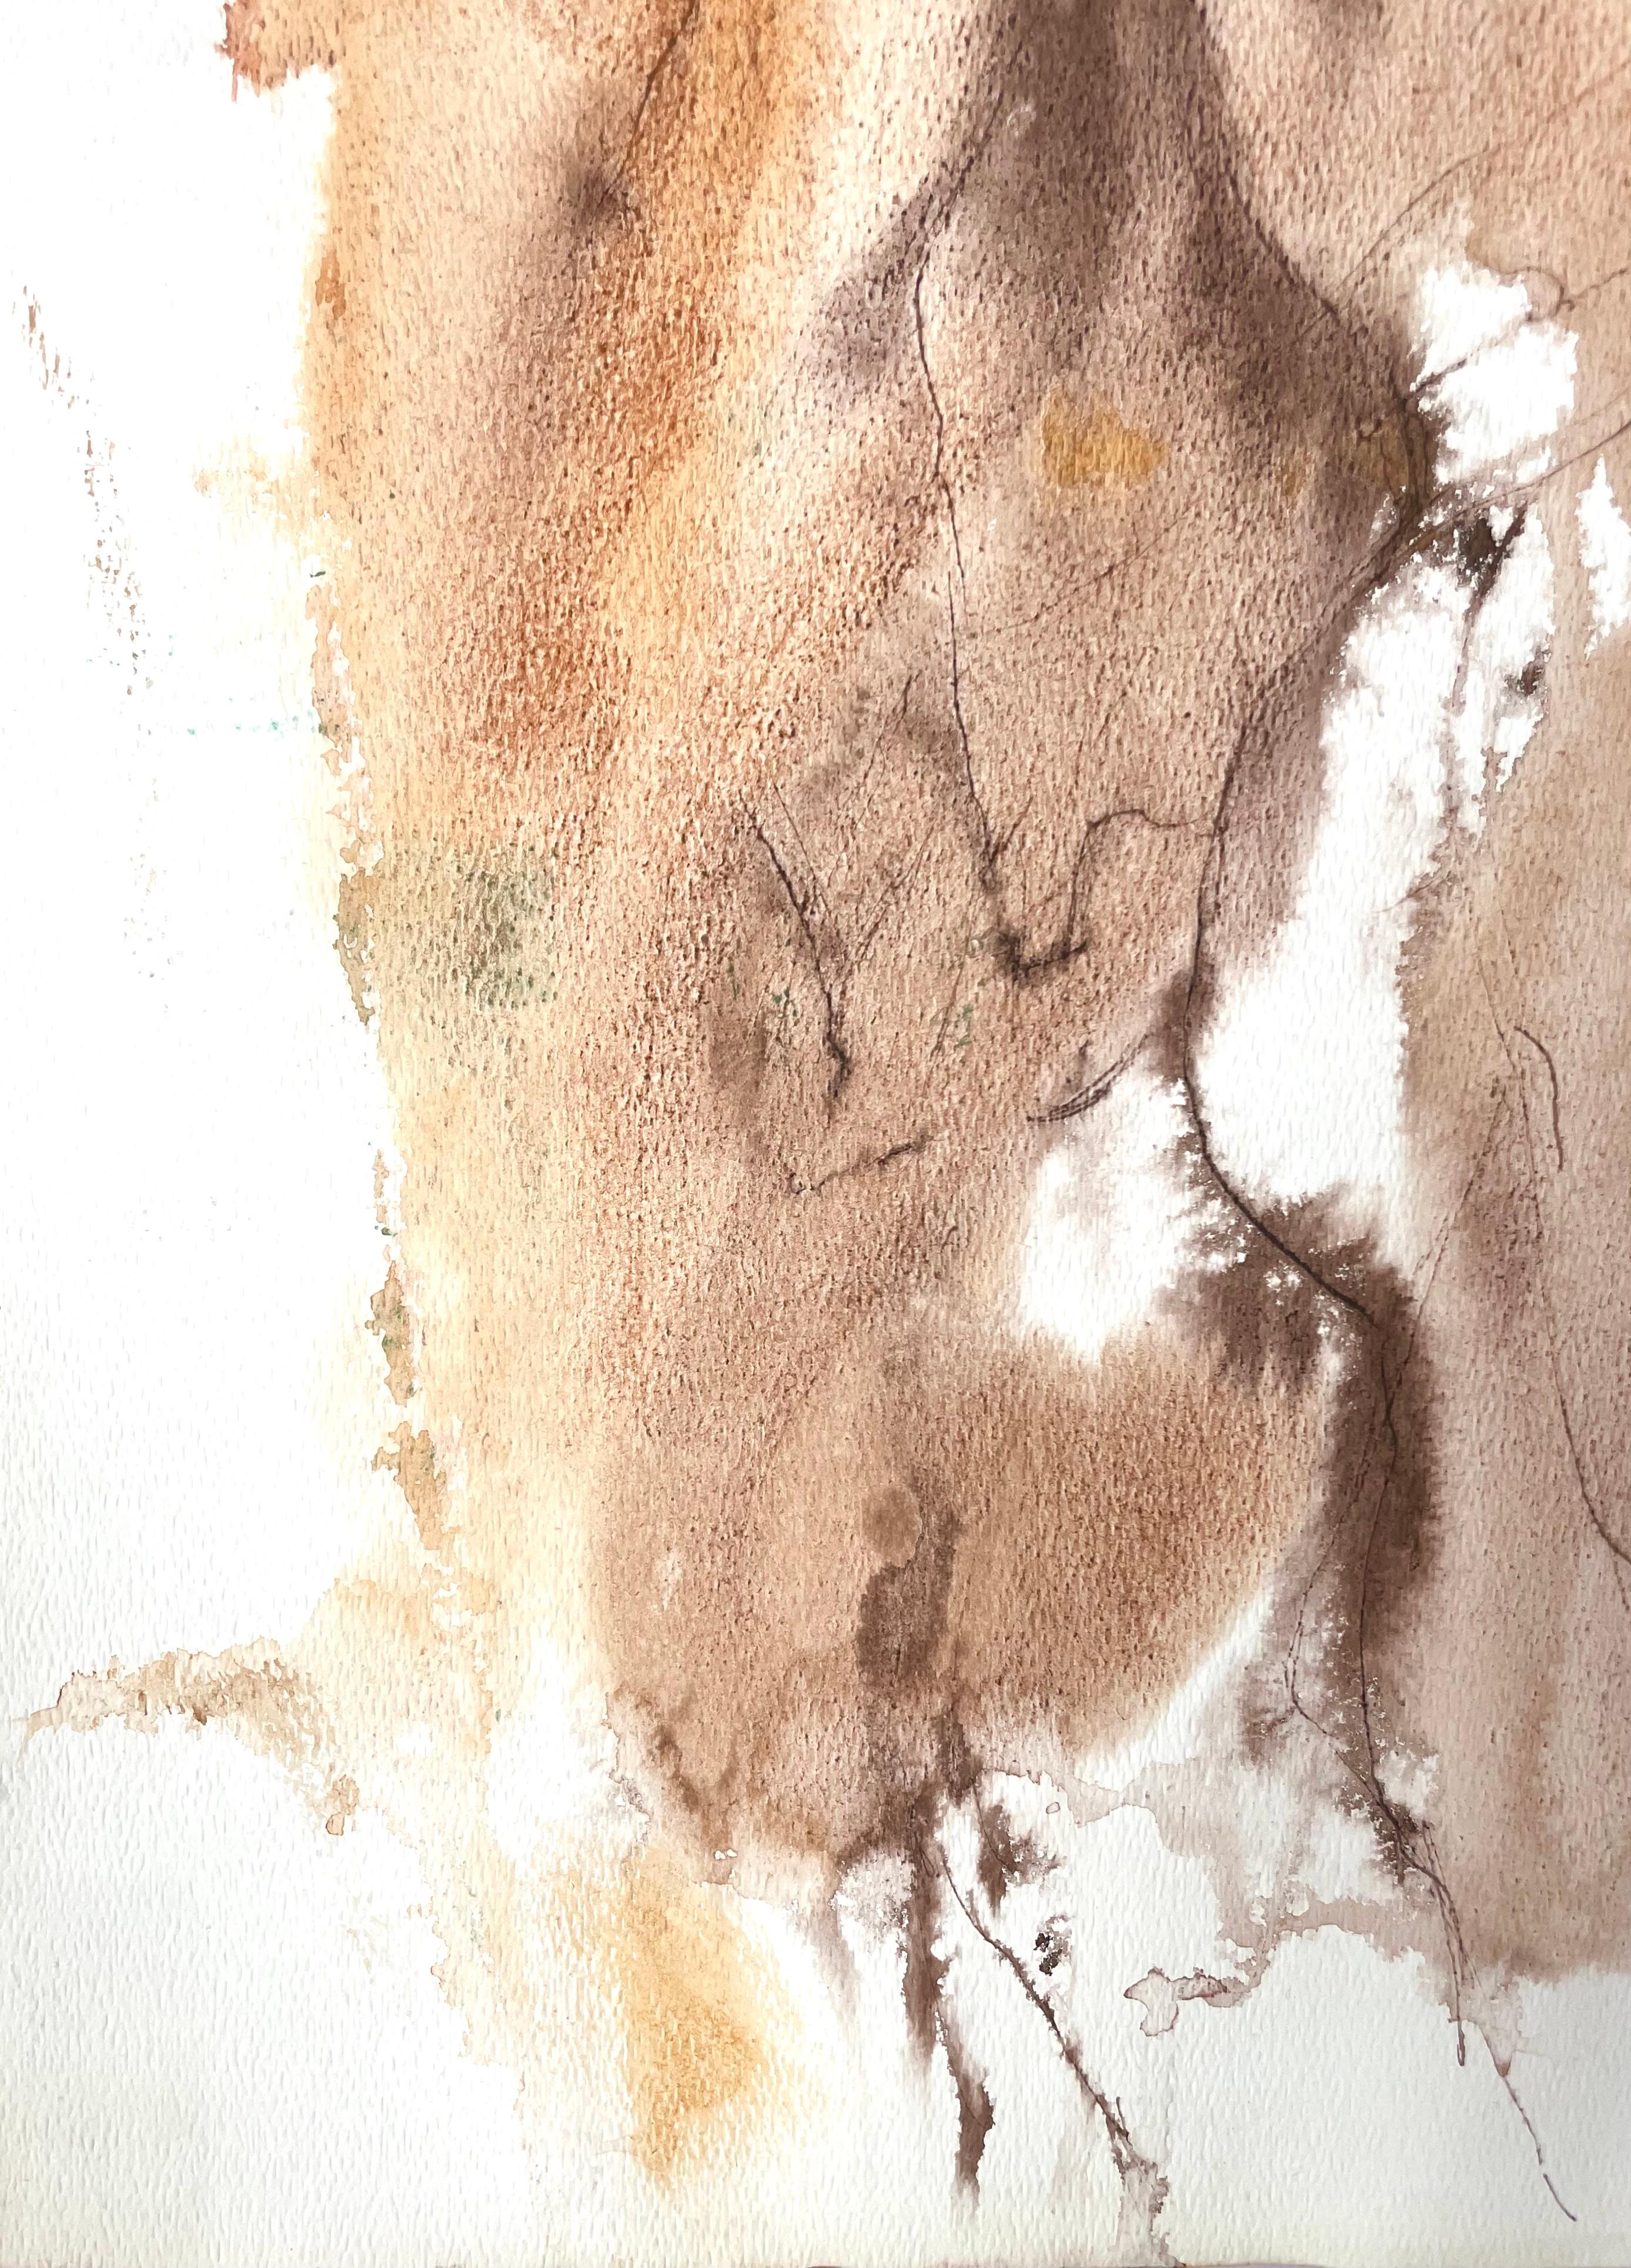 Original Gouache und Tinte nackte Figur Zeichnung von berühmten, zwanzigsten Jahrhunderts California impressionistischen Landschaftsmaler, Ronald Shap. Torso und Gesäß eines Mannes mit erhobenem Arm in braunen Farbtönen. 24x18 Zoll auf Papier.